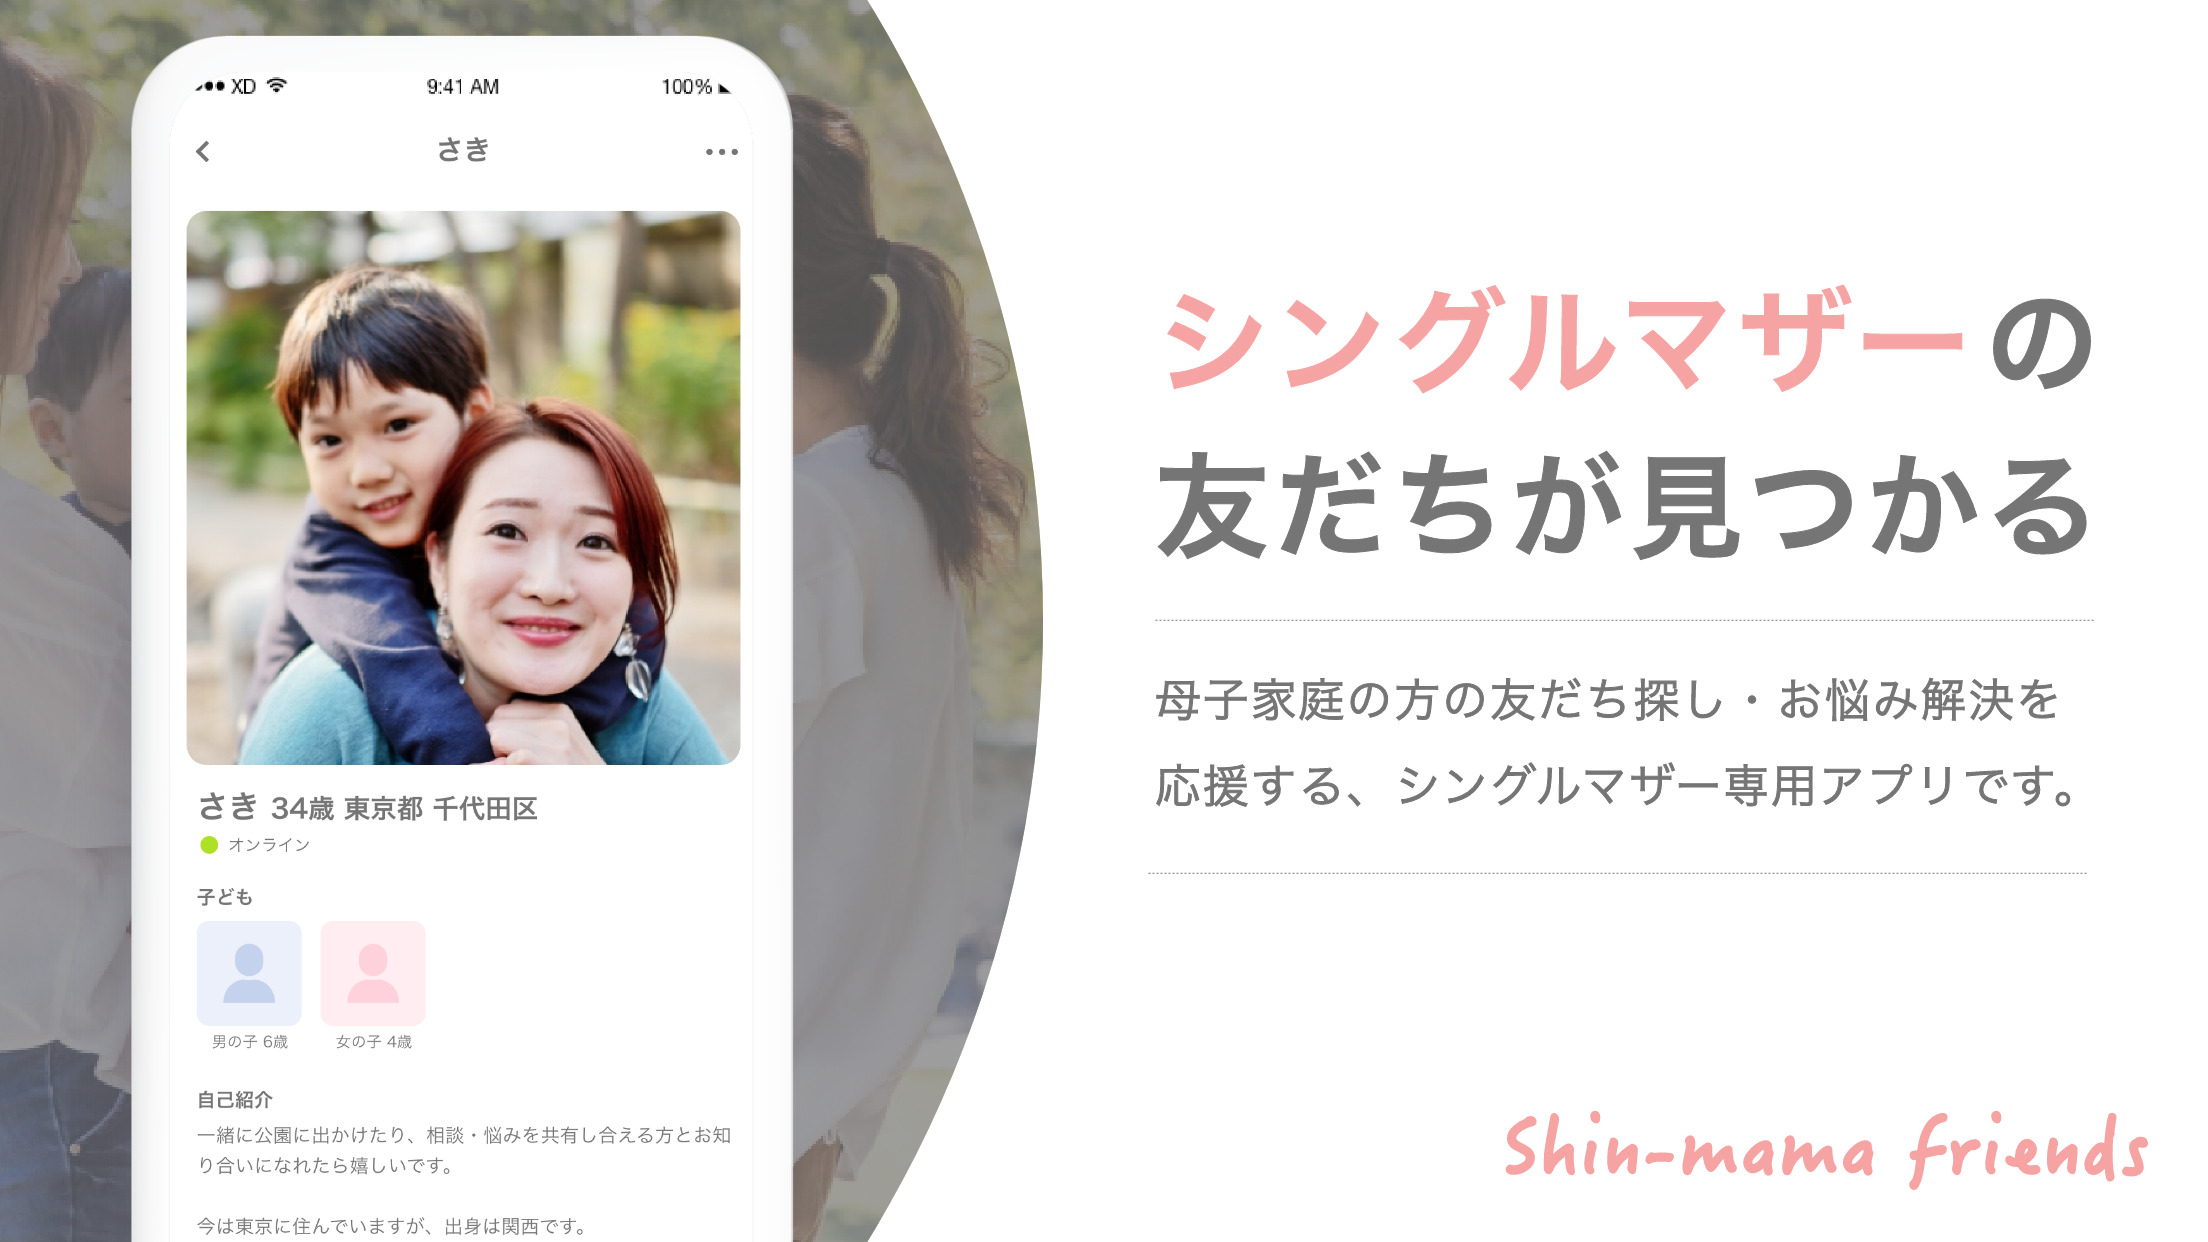 シングルマザーの友だちが見つかるコミュニティアプリ Shin-mama friends